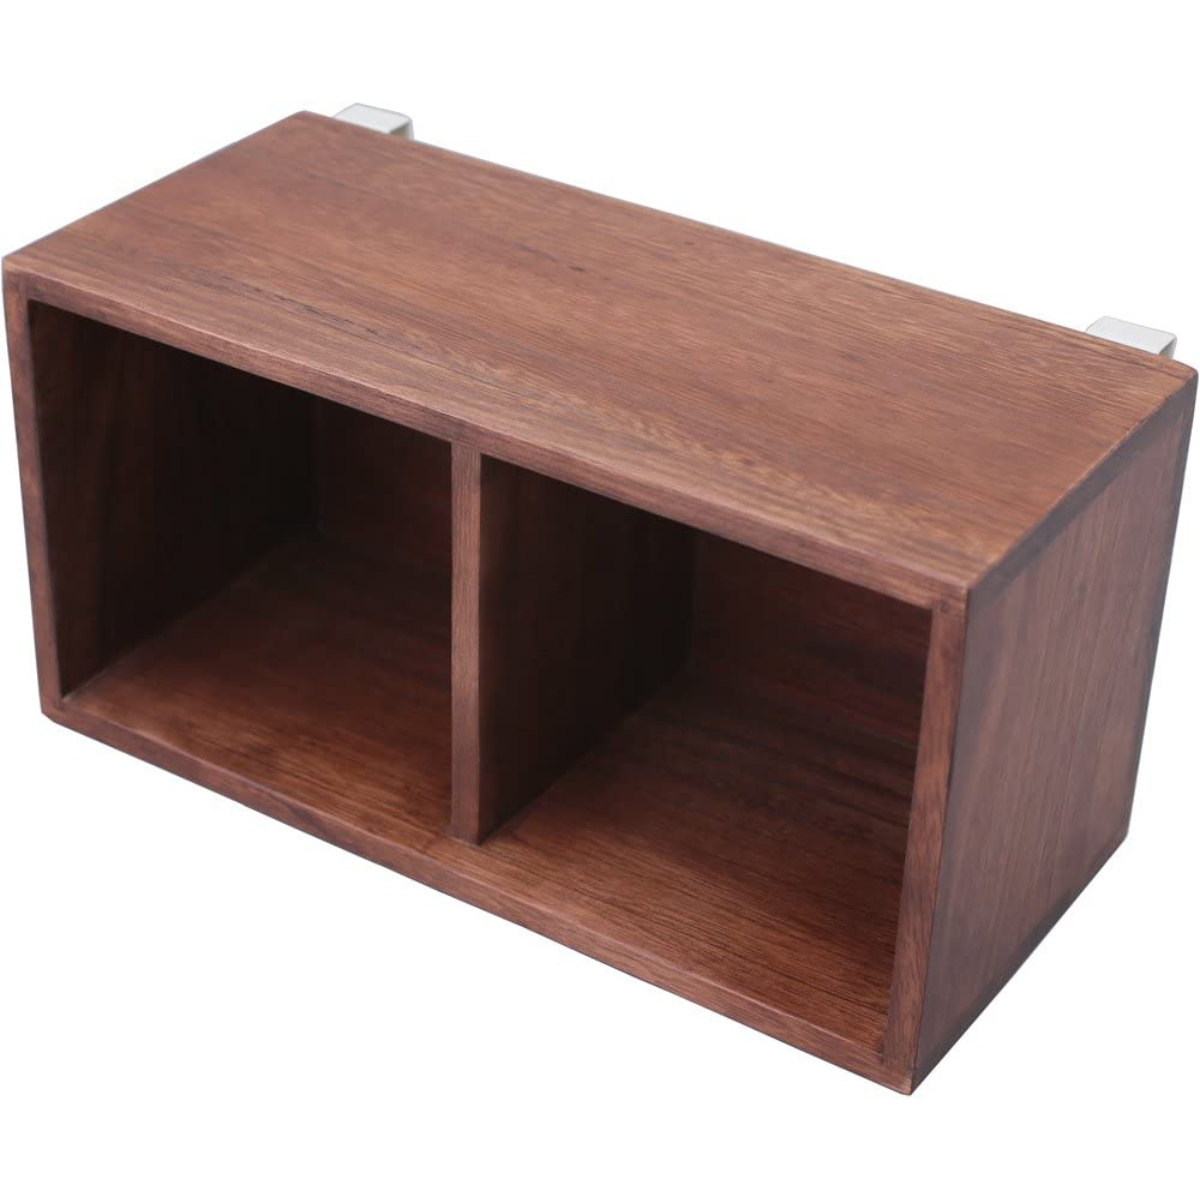 すのこに掛けられる家具 箱2マスダークブラウン 約W35.5×D17.5×H18.5cm 木製